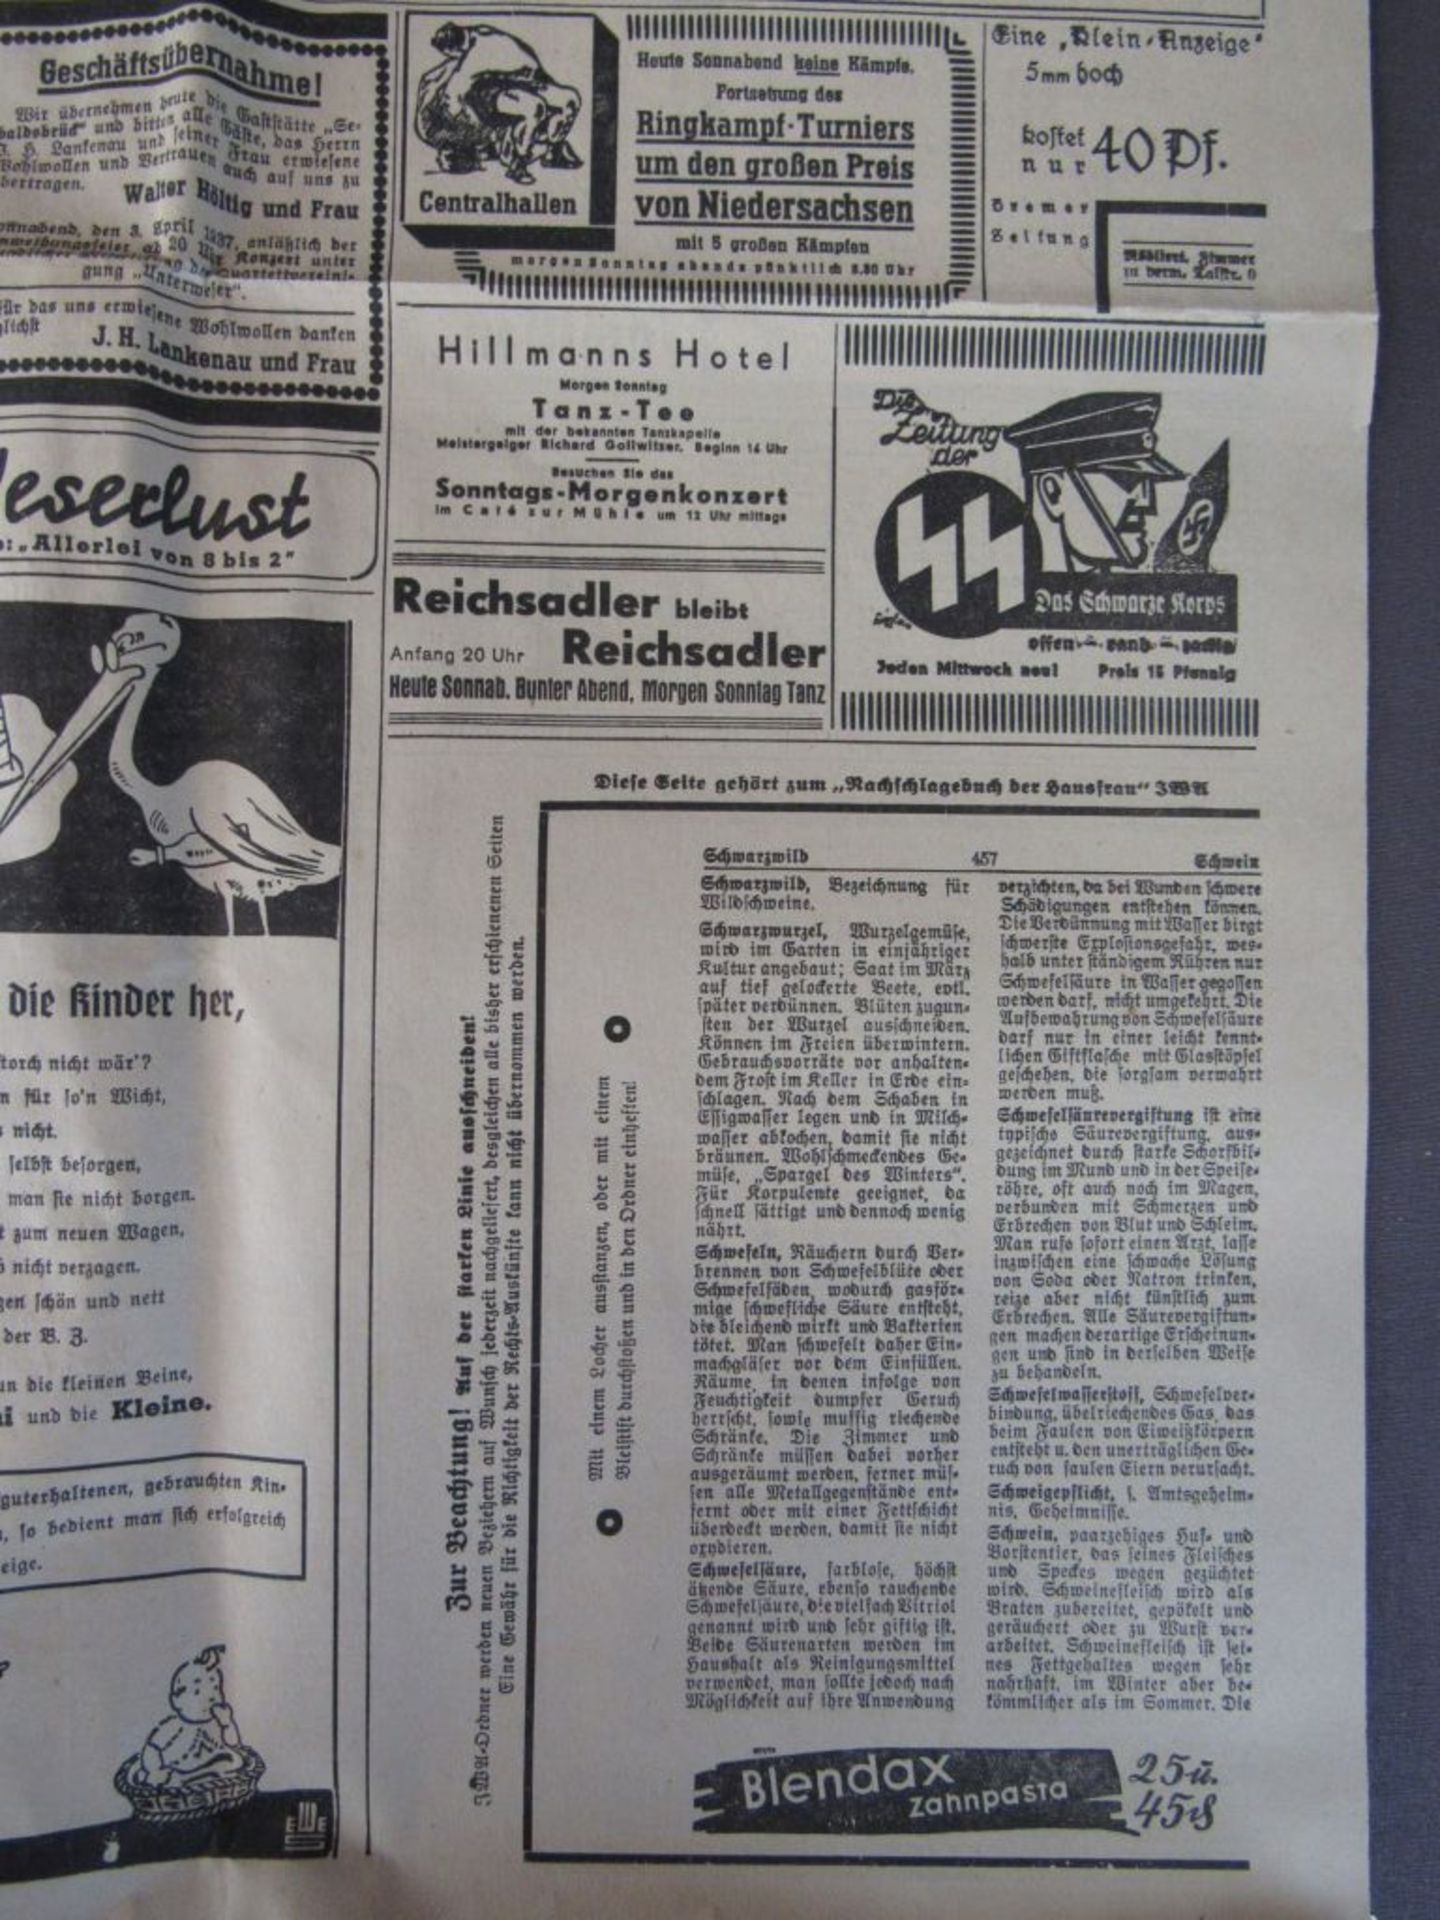 3.Reich Hamburger Fremdenblatt Zeitung - Image 11 of 12